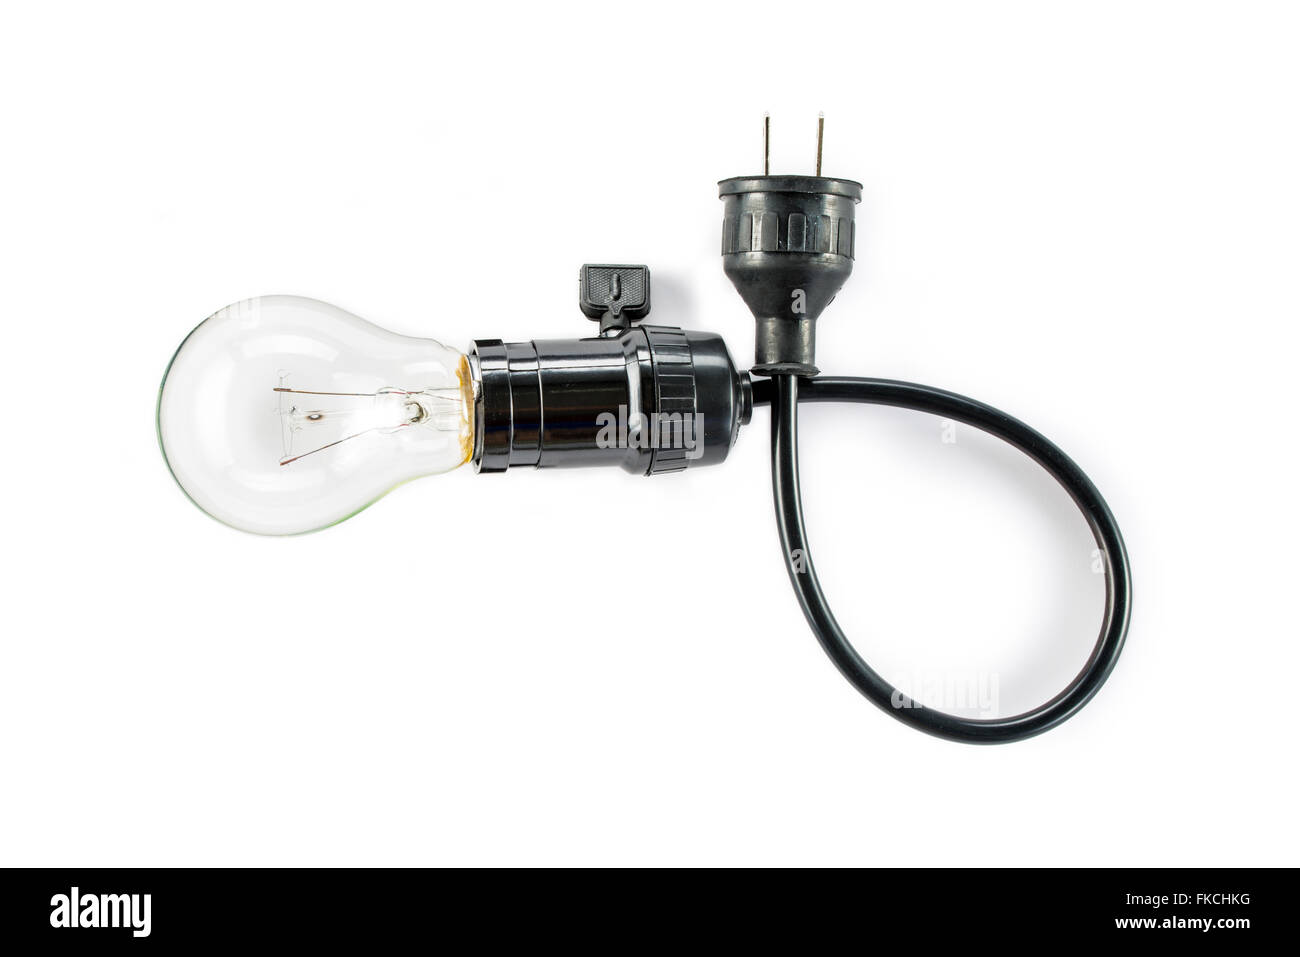 Glühbirne mit Stecker und Lampenhalter, Kabel-Wolfram-Energie  Stockfotografie - Alamy